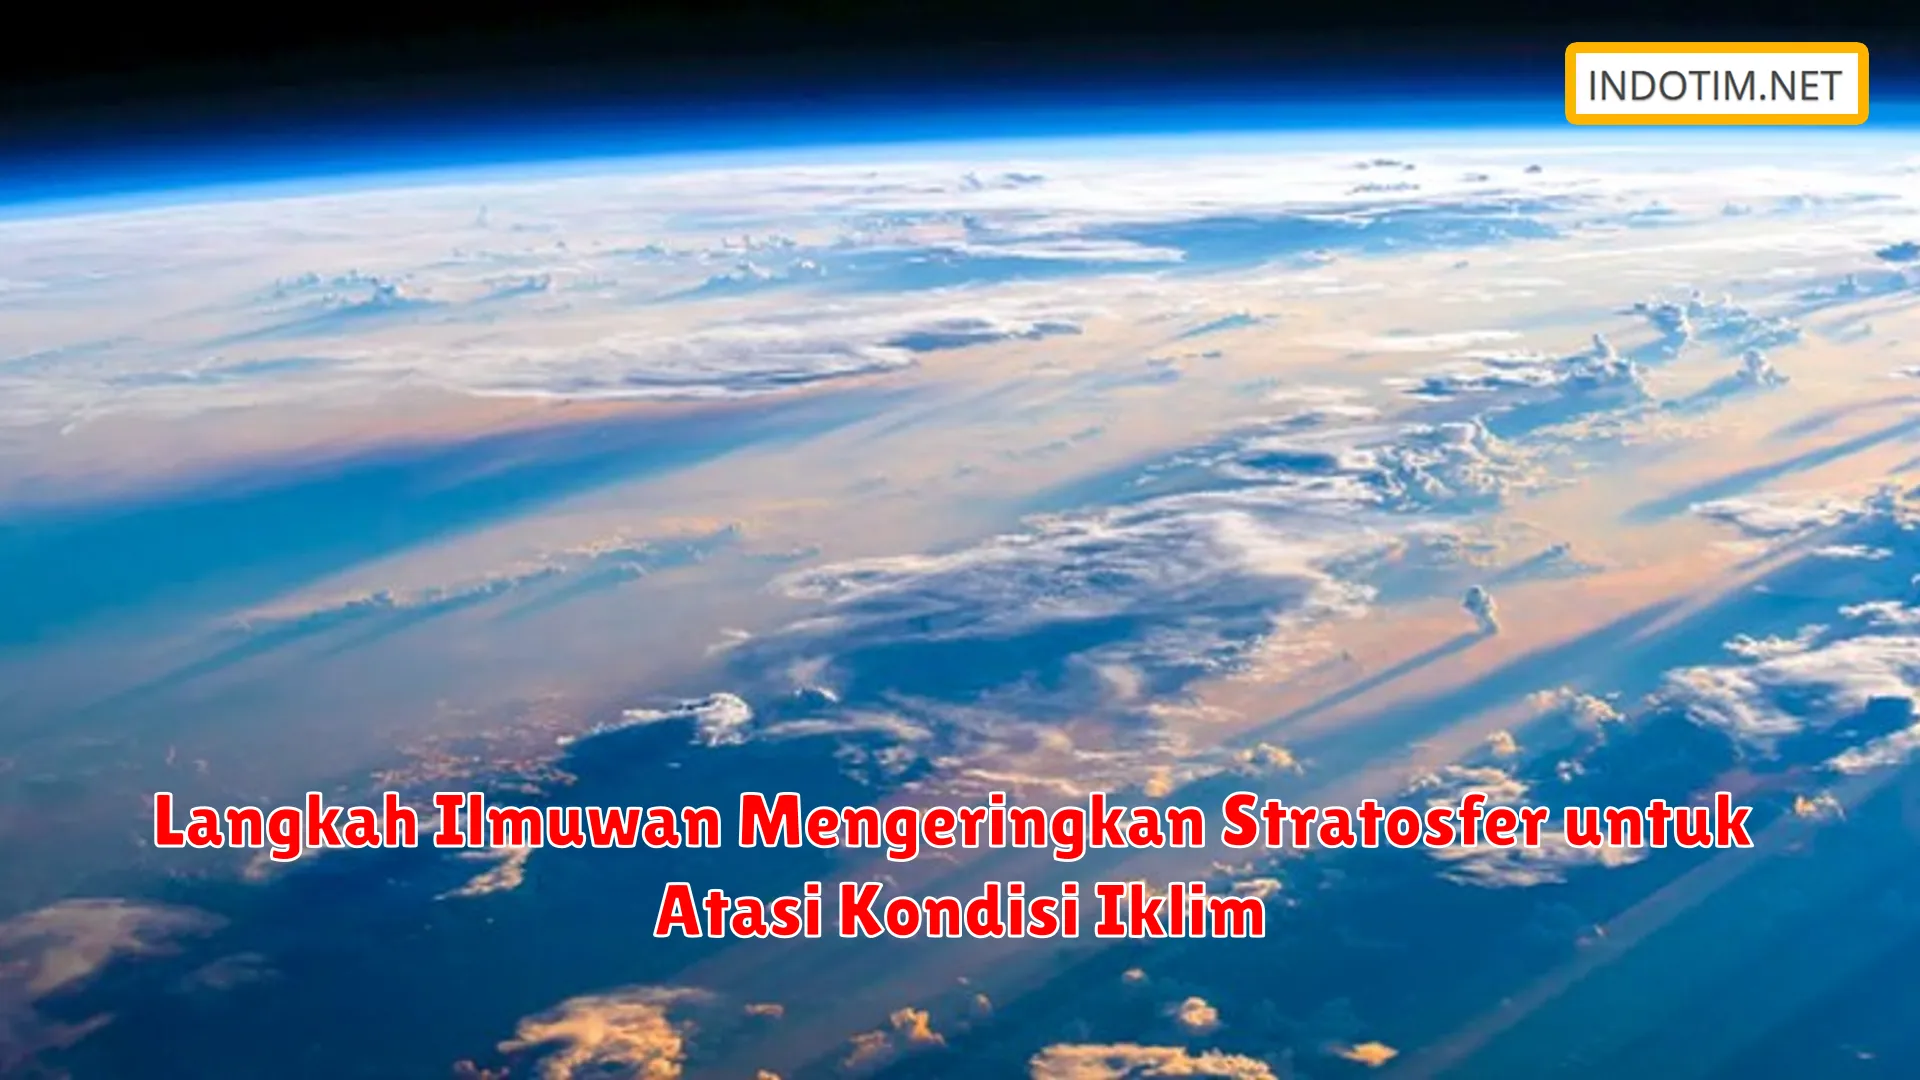 Langkah Ilmuwan Mengeringkan Stratosfer untuk Atasi Kondisi Iklim